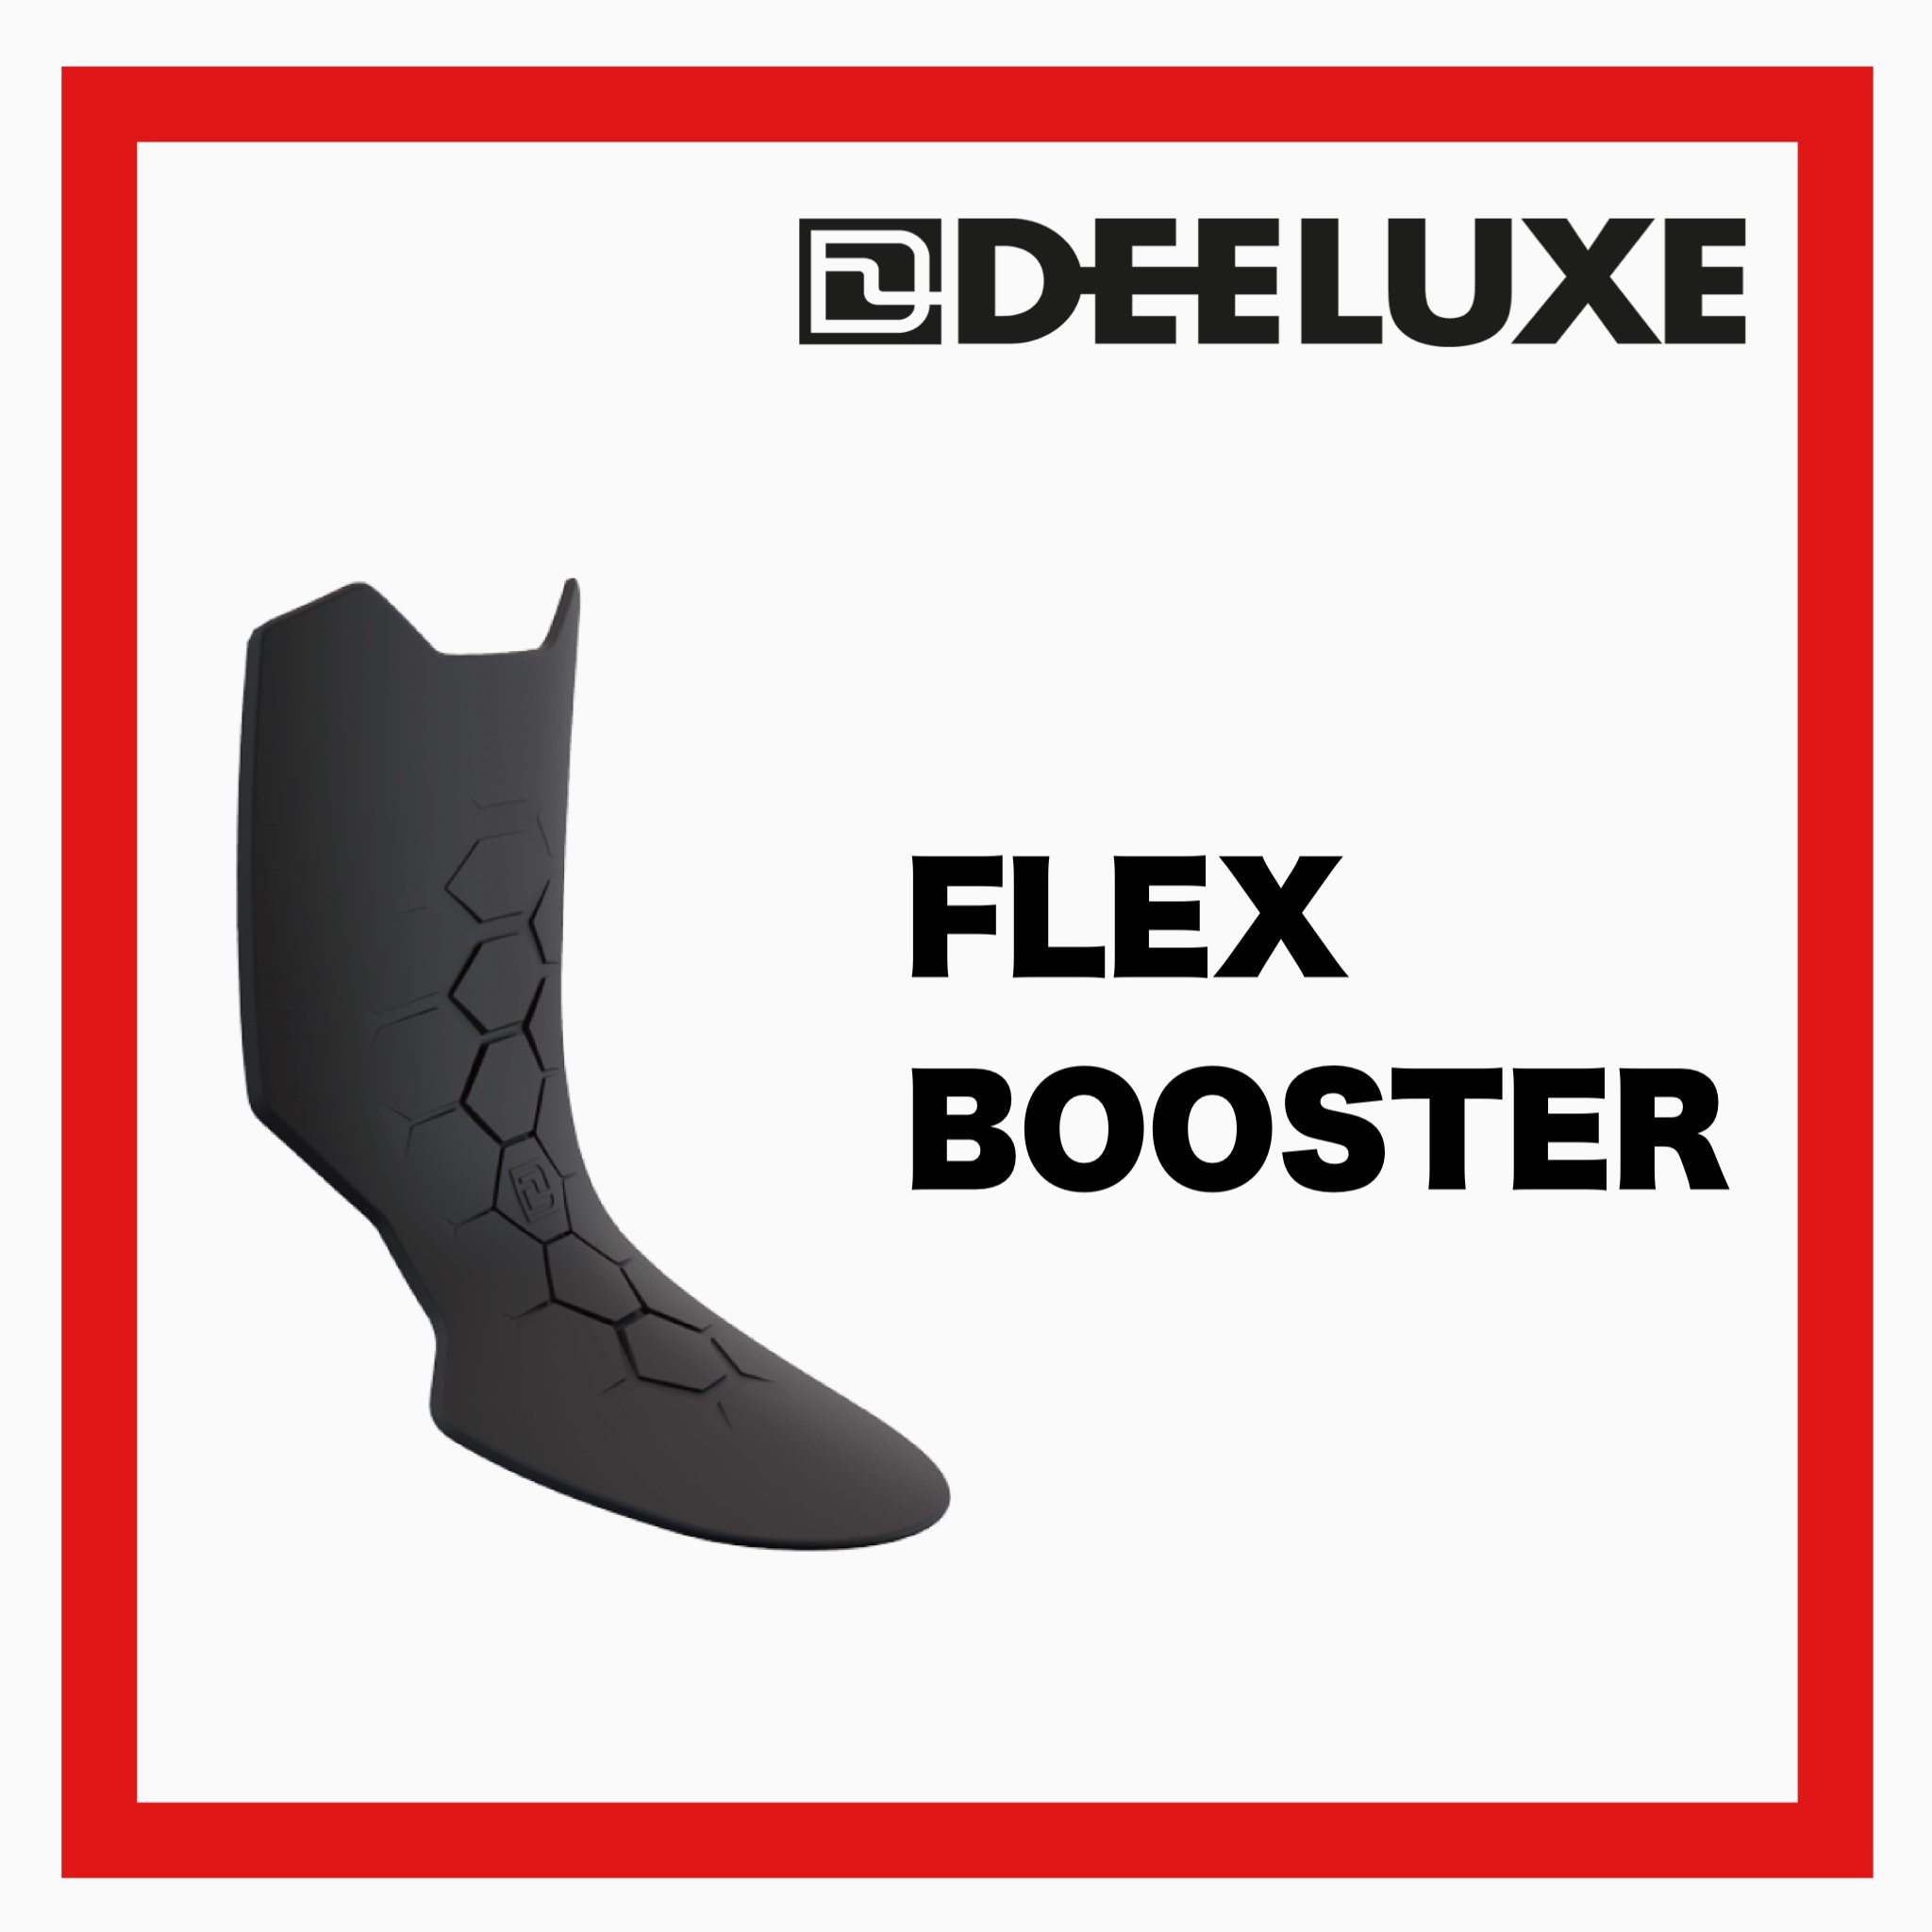 DEELUXE-FLEX BOOSTER